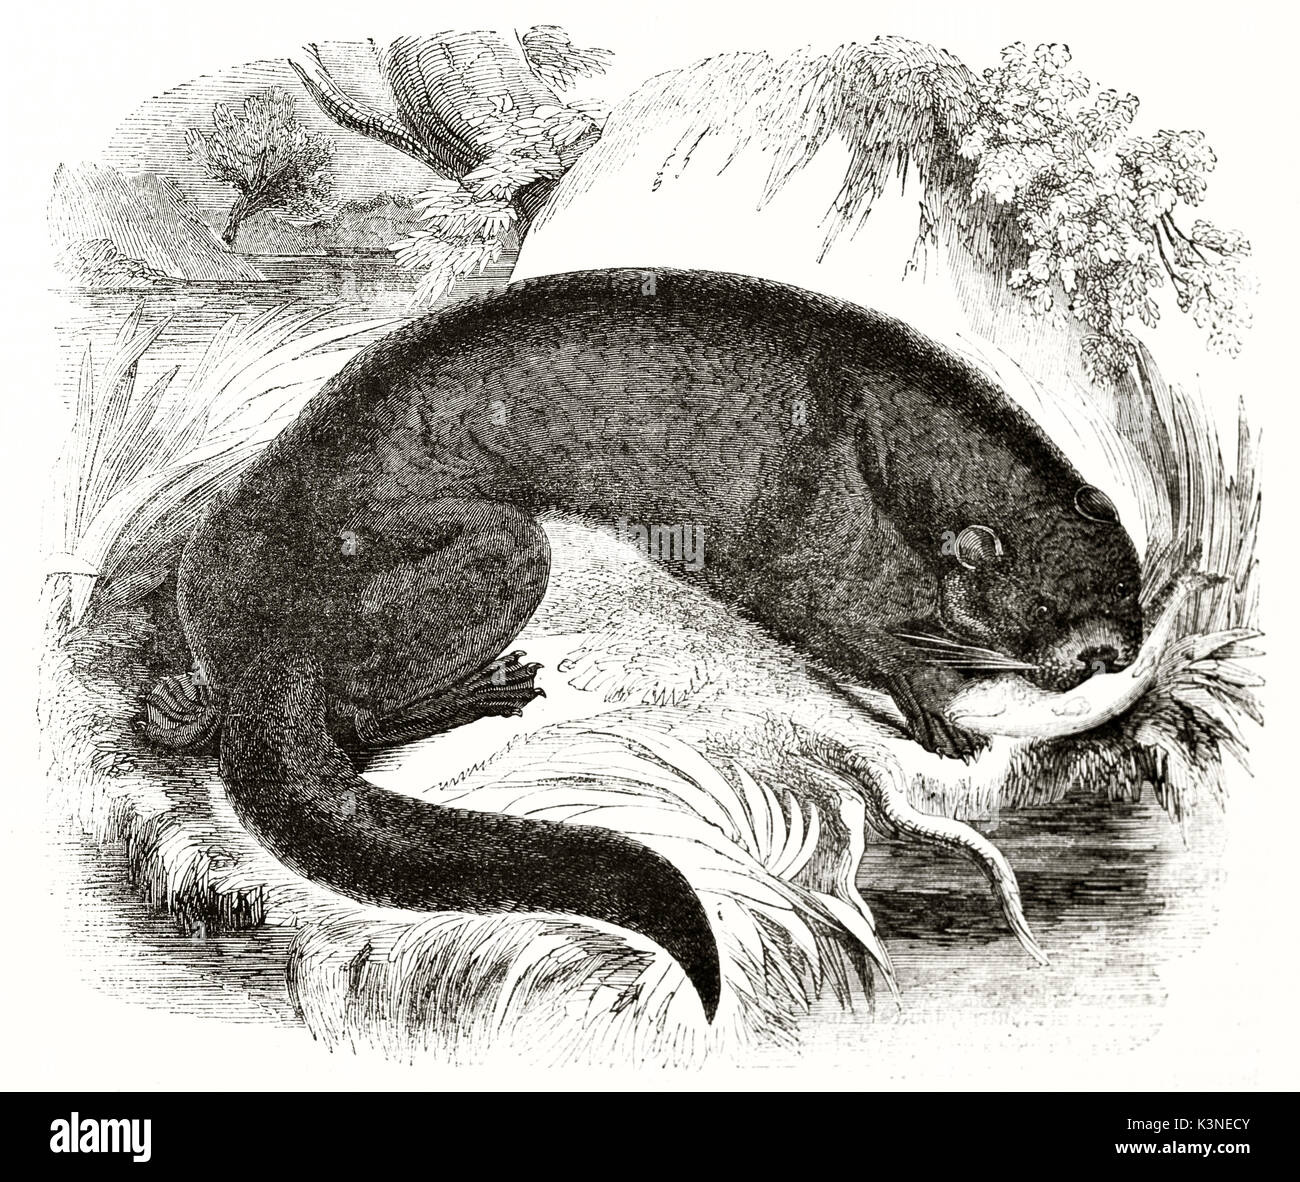 Alte Abbildung: ein Otter (Lutra lutra) des ganzen Körpers in seiner natürlichen Umgebung, reich an Vegetation und Wasser angezeigt. Von unbekannter Autor auf Magasin Pittoresque Paris 1839 veröffentlicht. Stockfoto